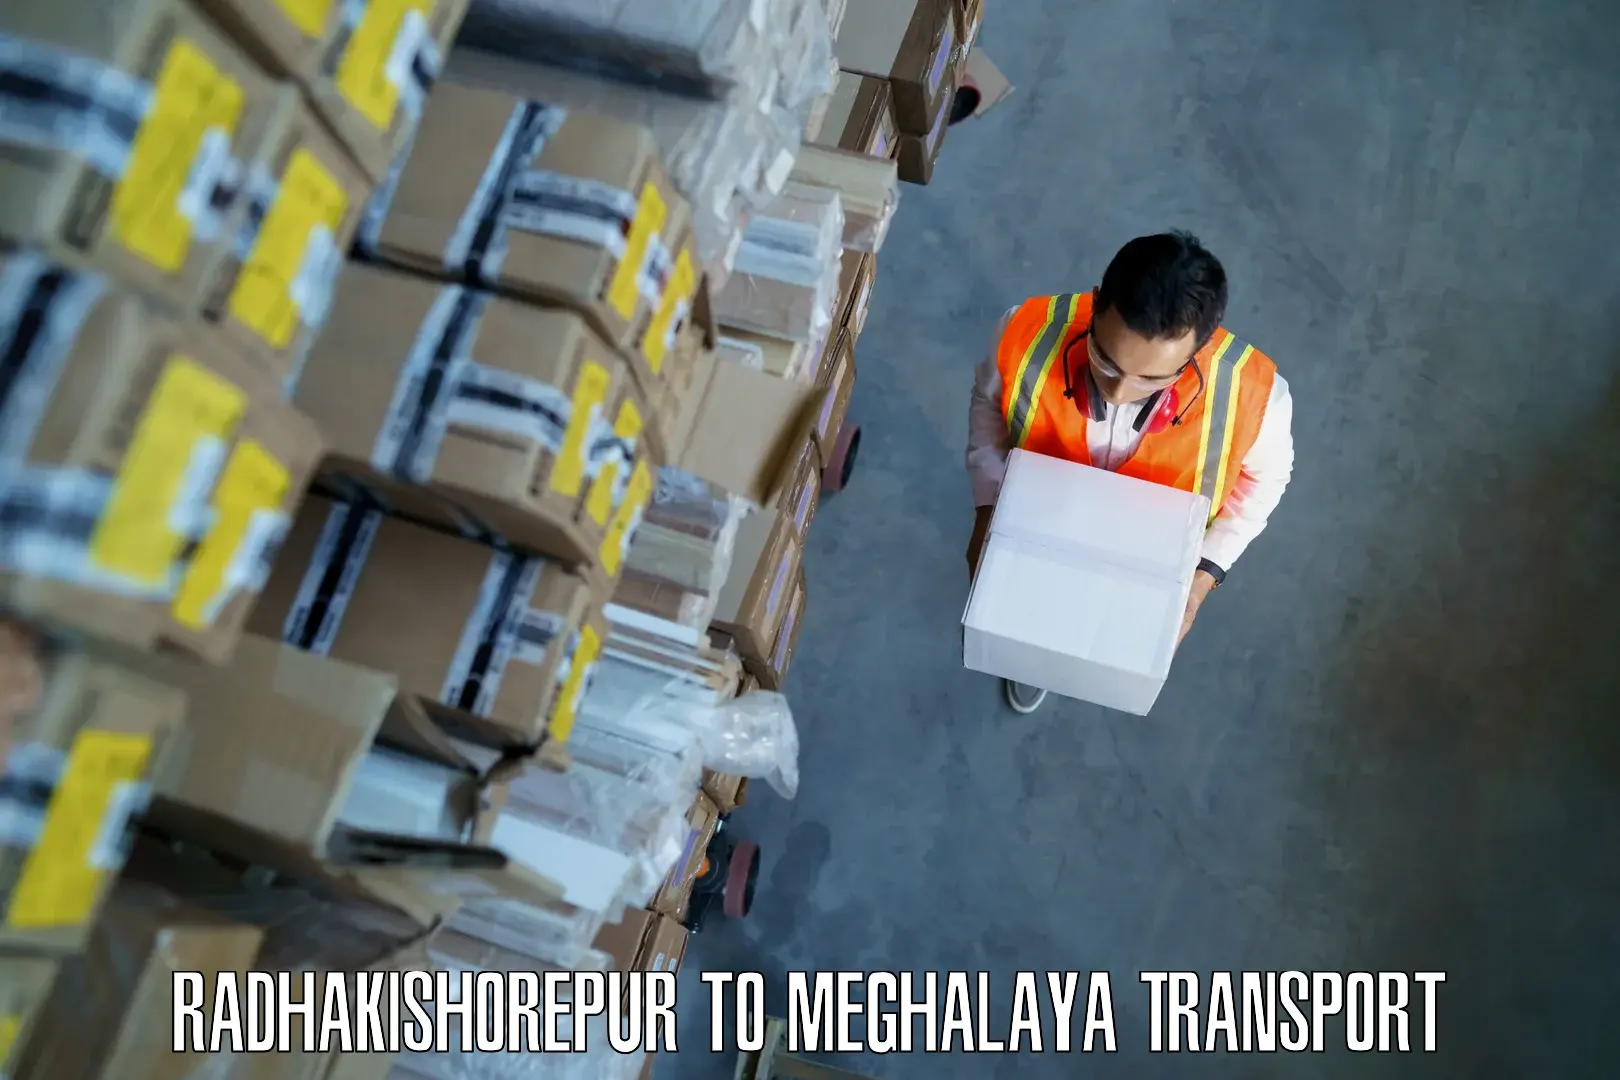 Furniture transport service Radhakishorepur to Meghalaya